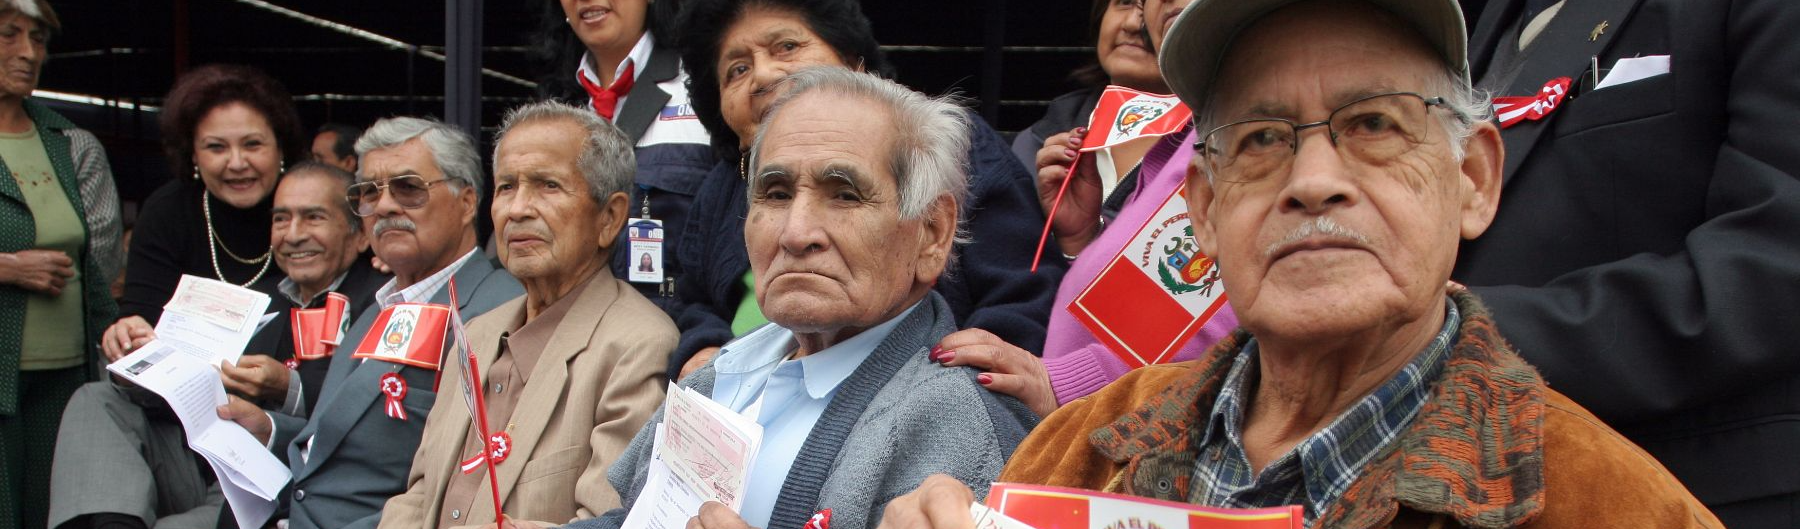 Sistema Nacional de Aposentadoria do Peru completa 50 anos sob ofensiva do setor privado